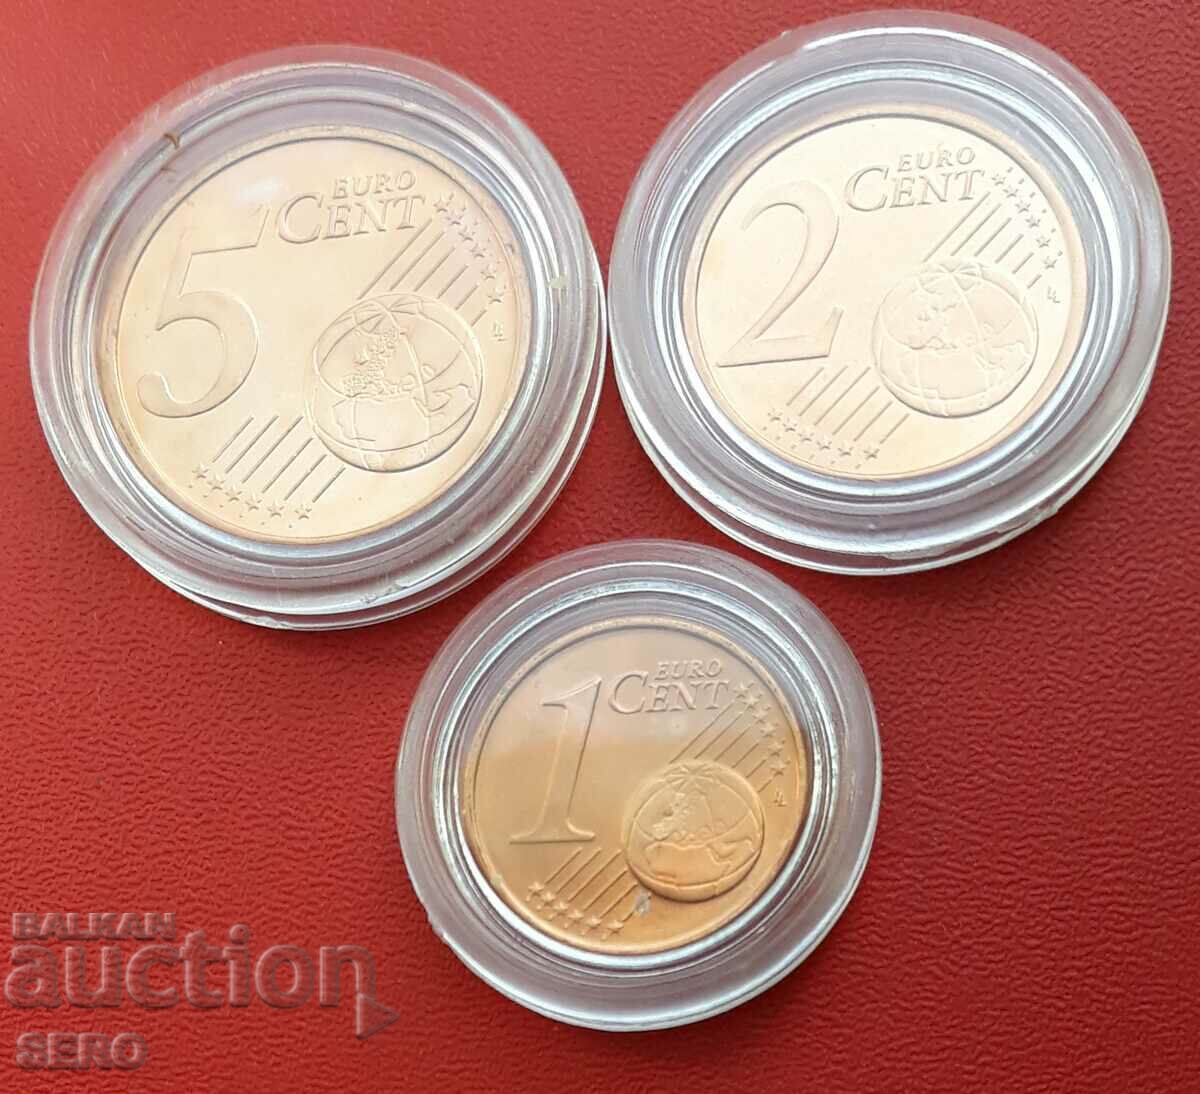 Irlanda-lot monede de 3 euro 2008 în capsule